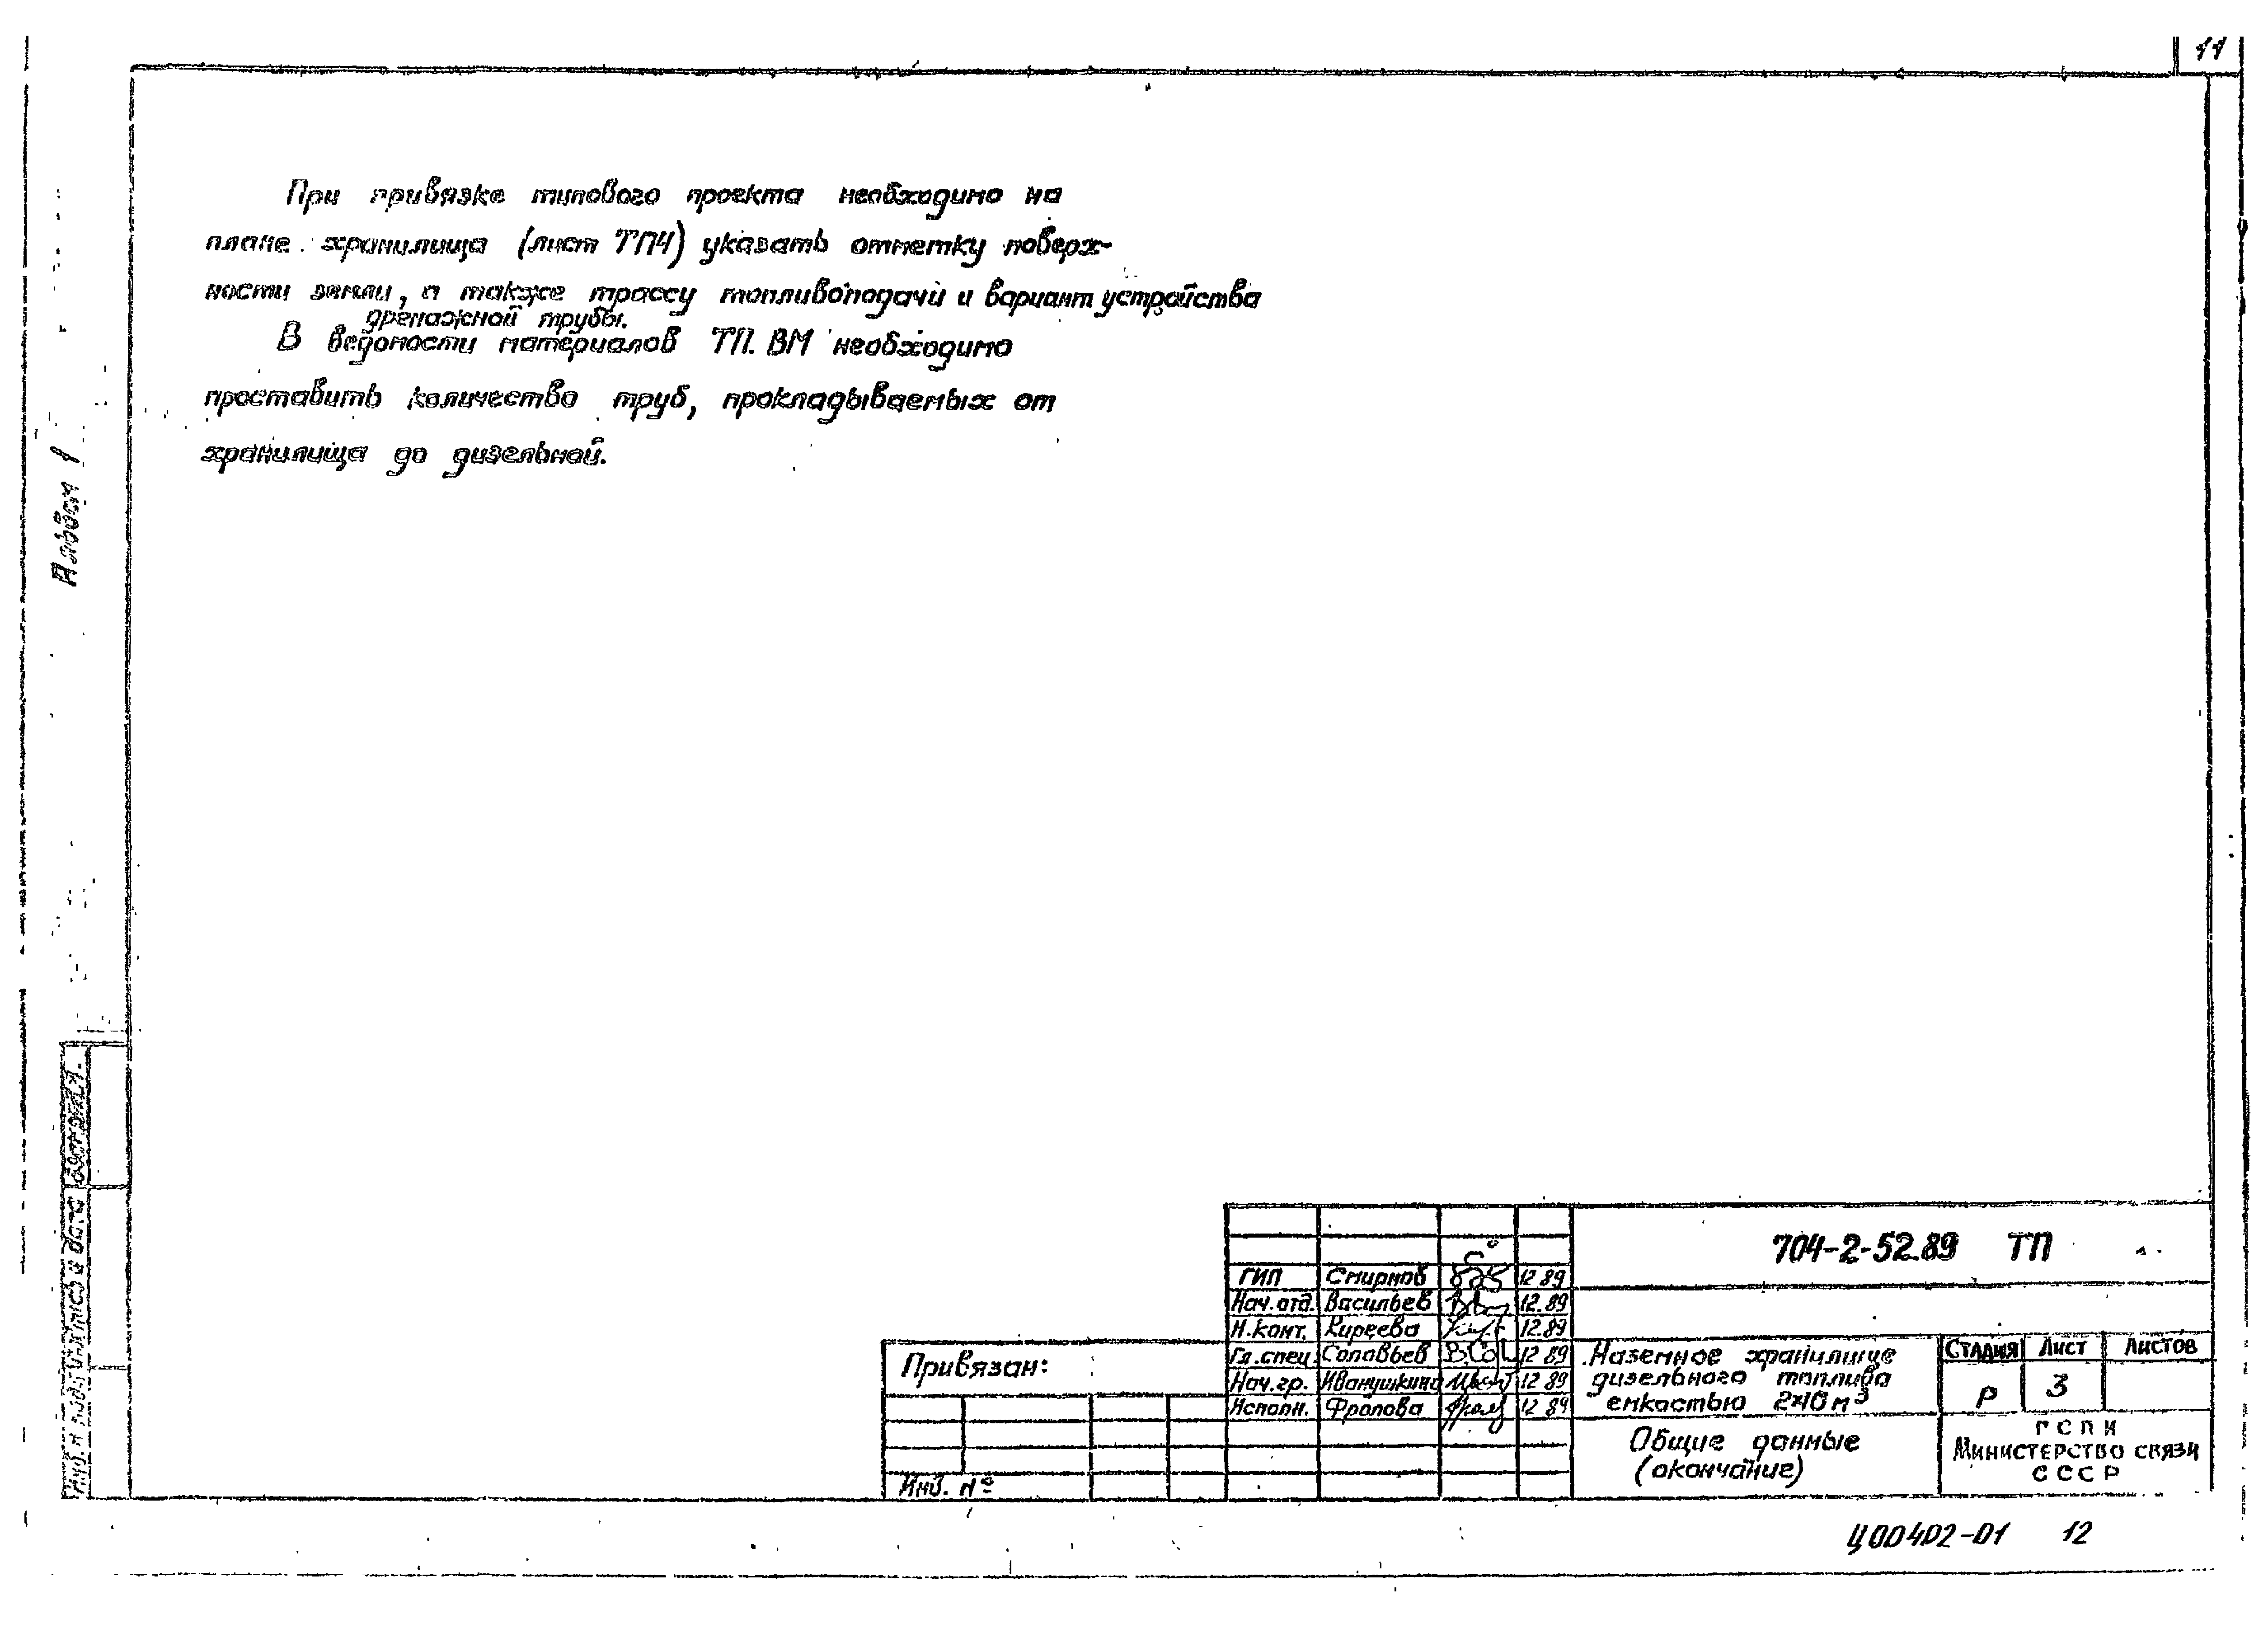 Типовой проект 704-2-52.89